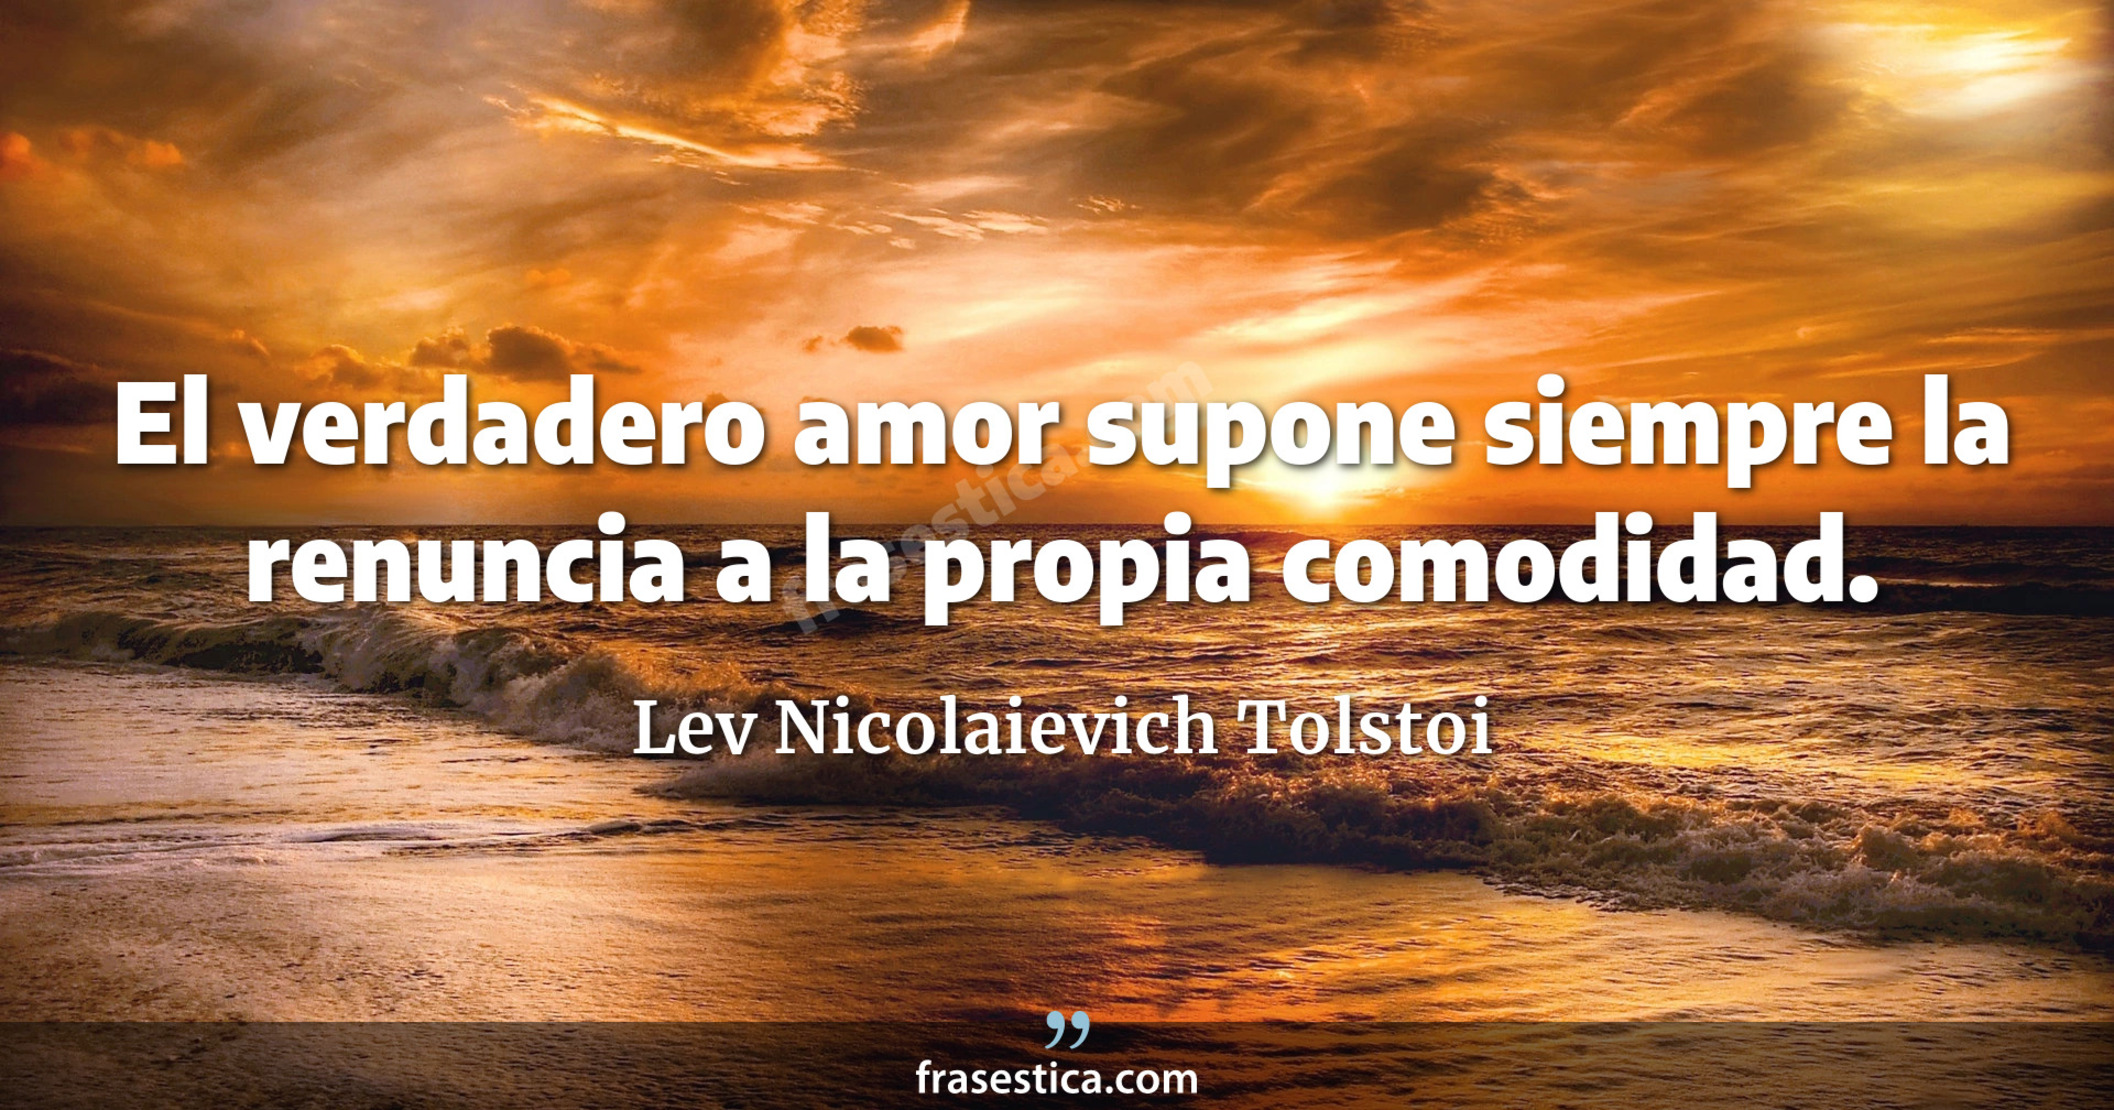 El verdadero amor supone siempre la renuncia a la propia comodidad. - Lev Nicolaievich Tolstoi